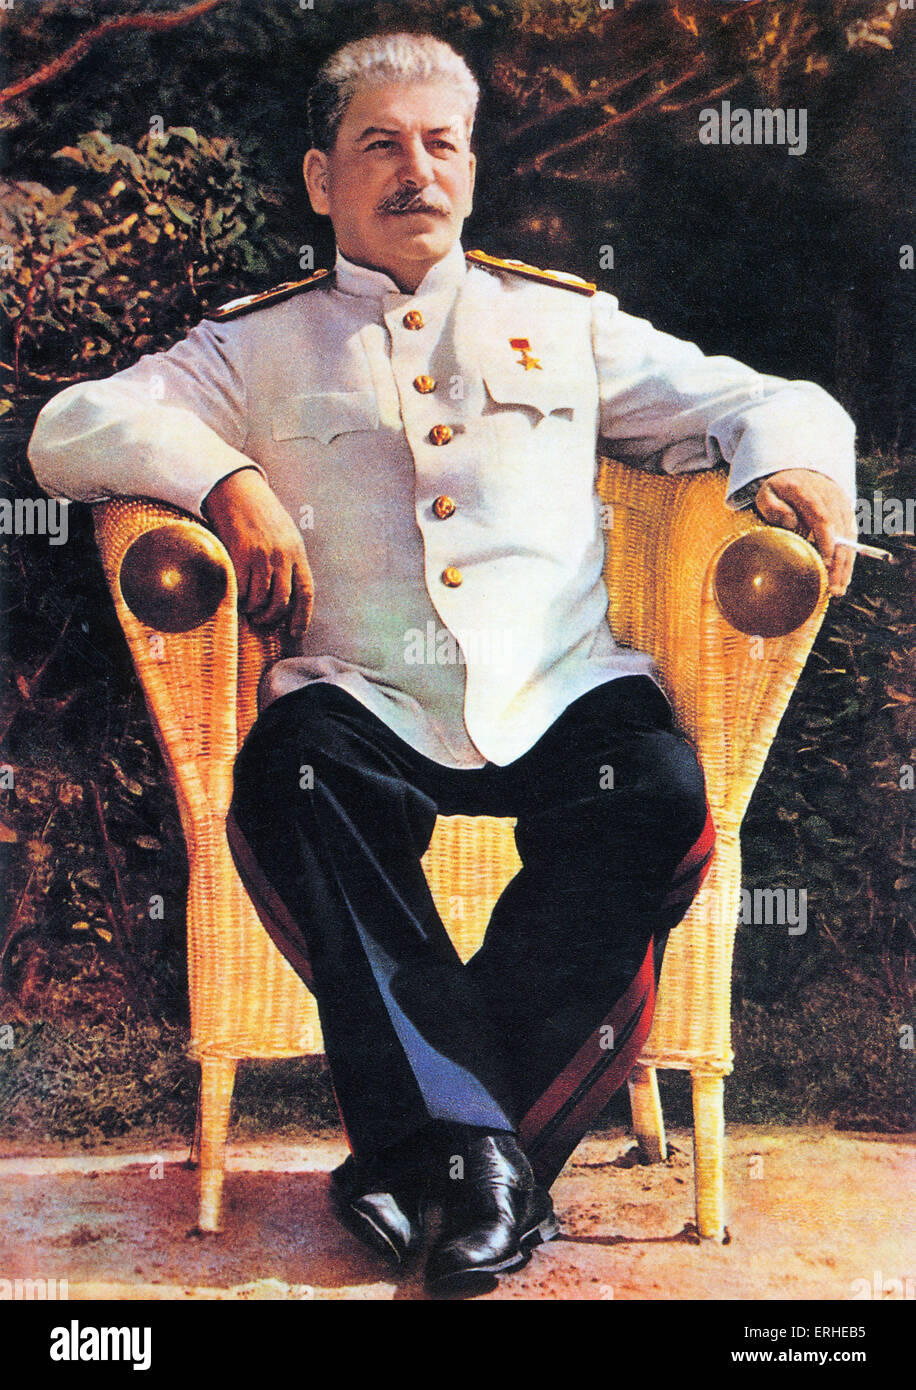 Joseph Stalin, ( Iosif Vissarionovich Dzhugashvili ) sovietico rivoluzionario russo uomo politico e leader / righello. Nato a Foto Stock